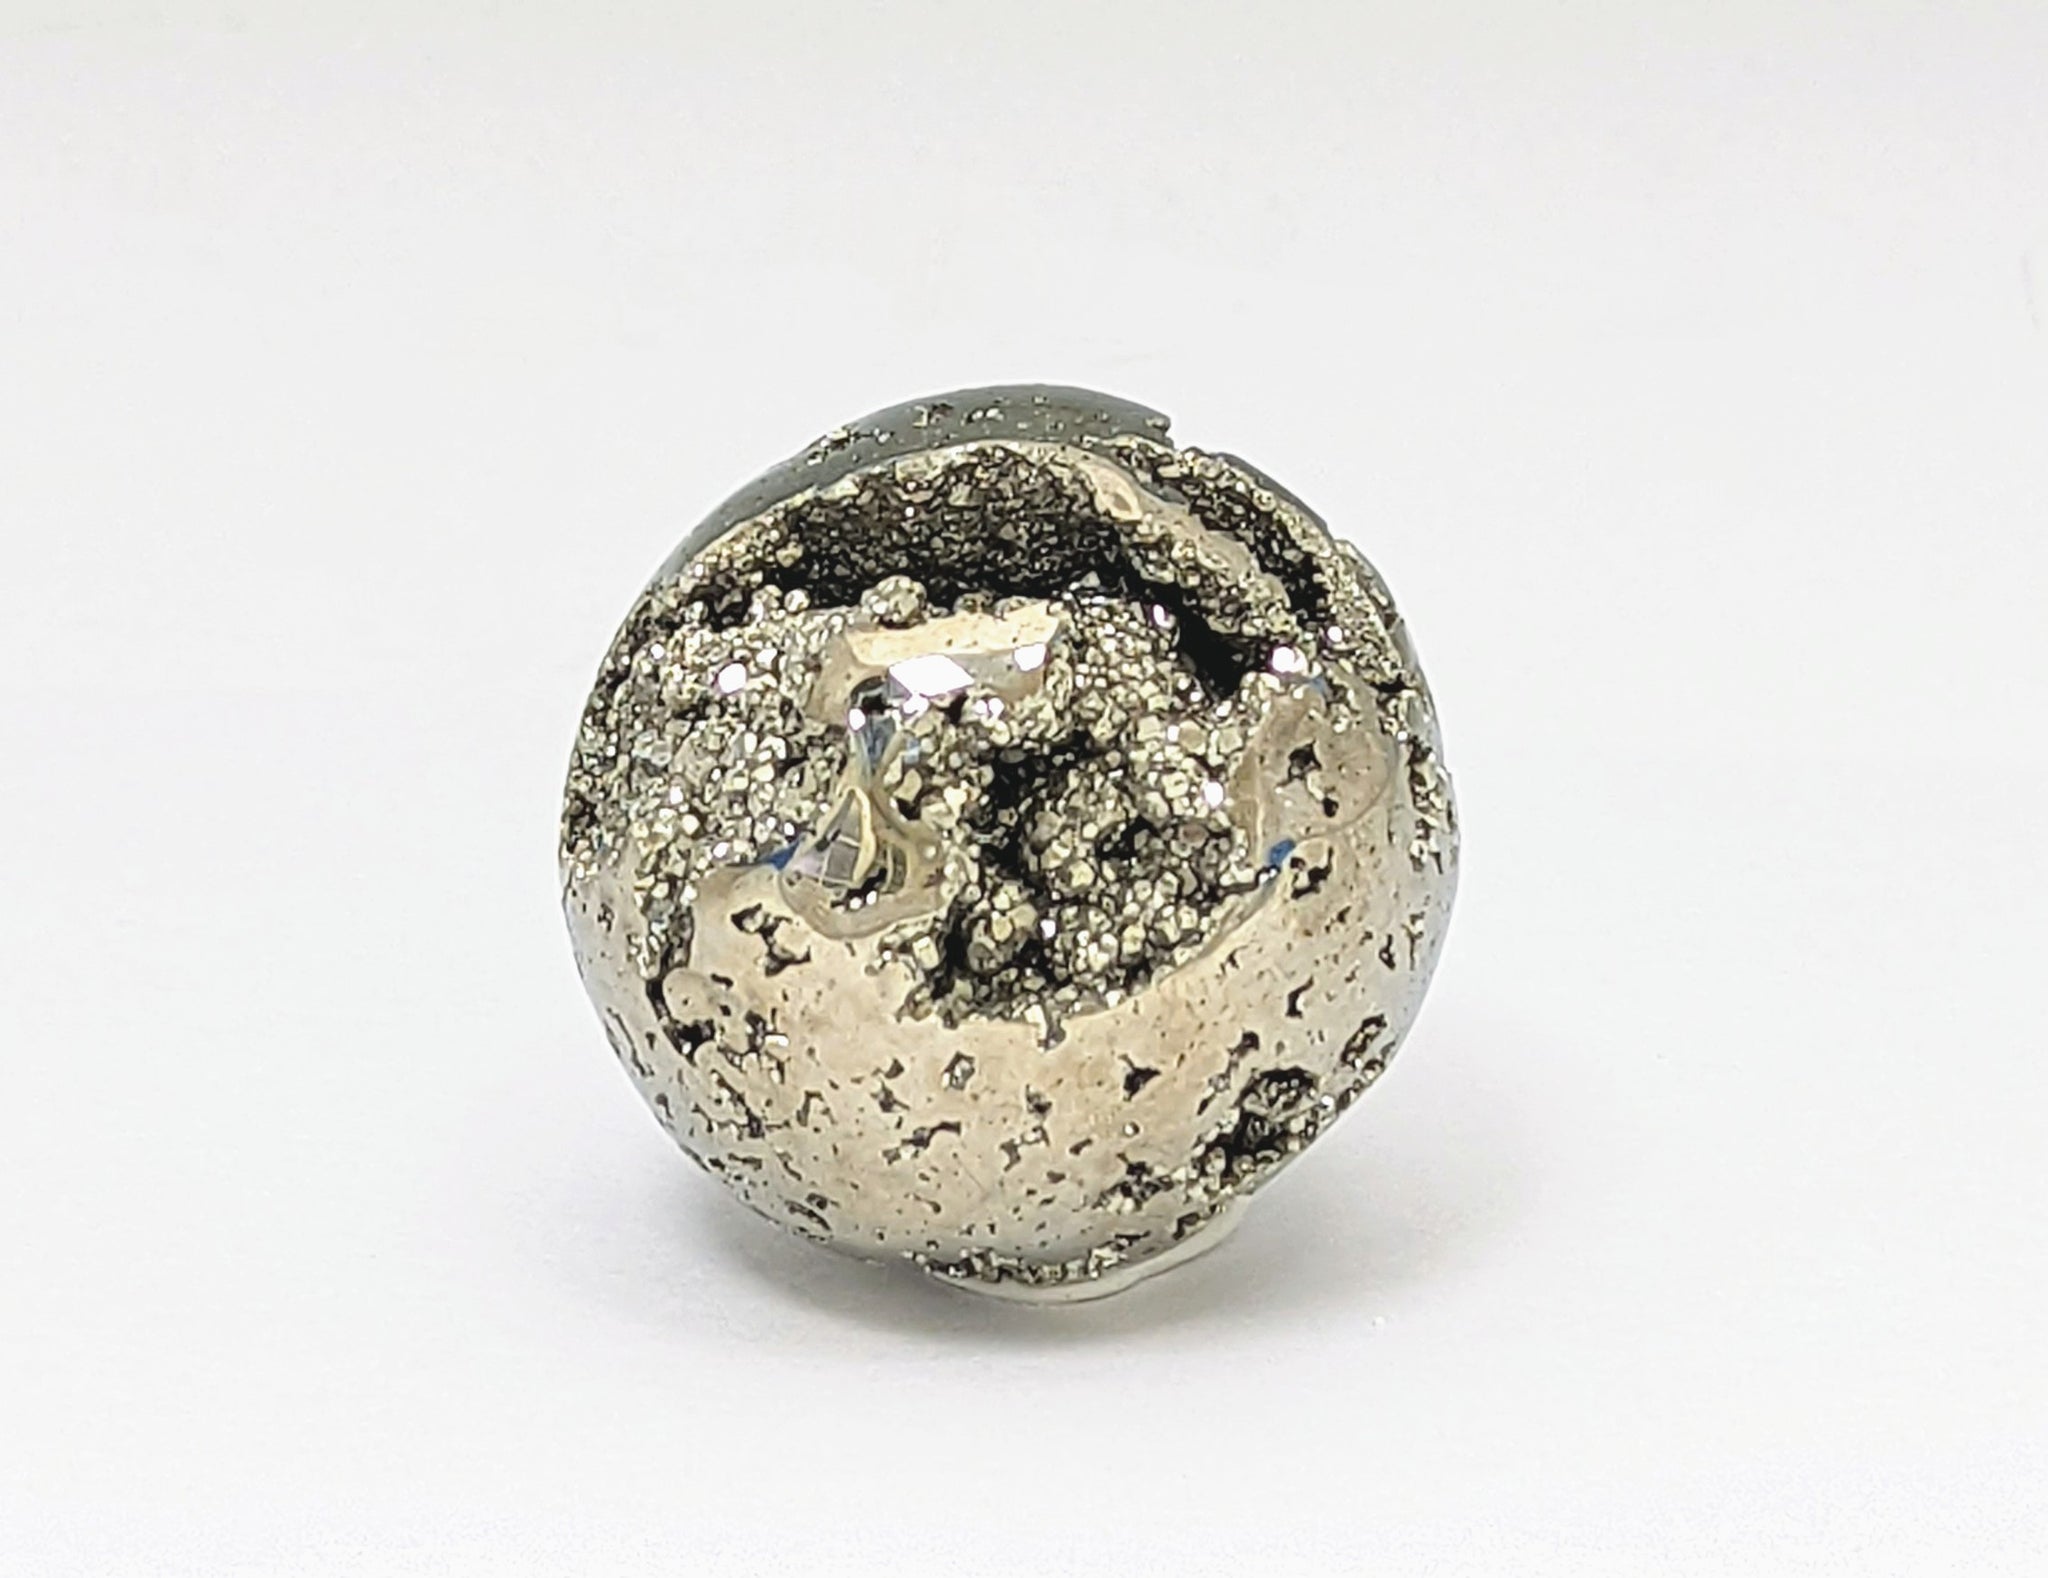 Tumbled Glittery Gold Peruvian Pyrite Sphere